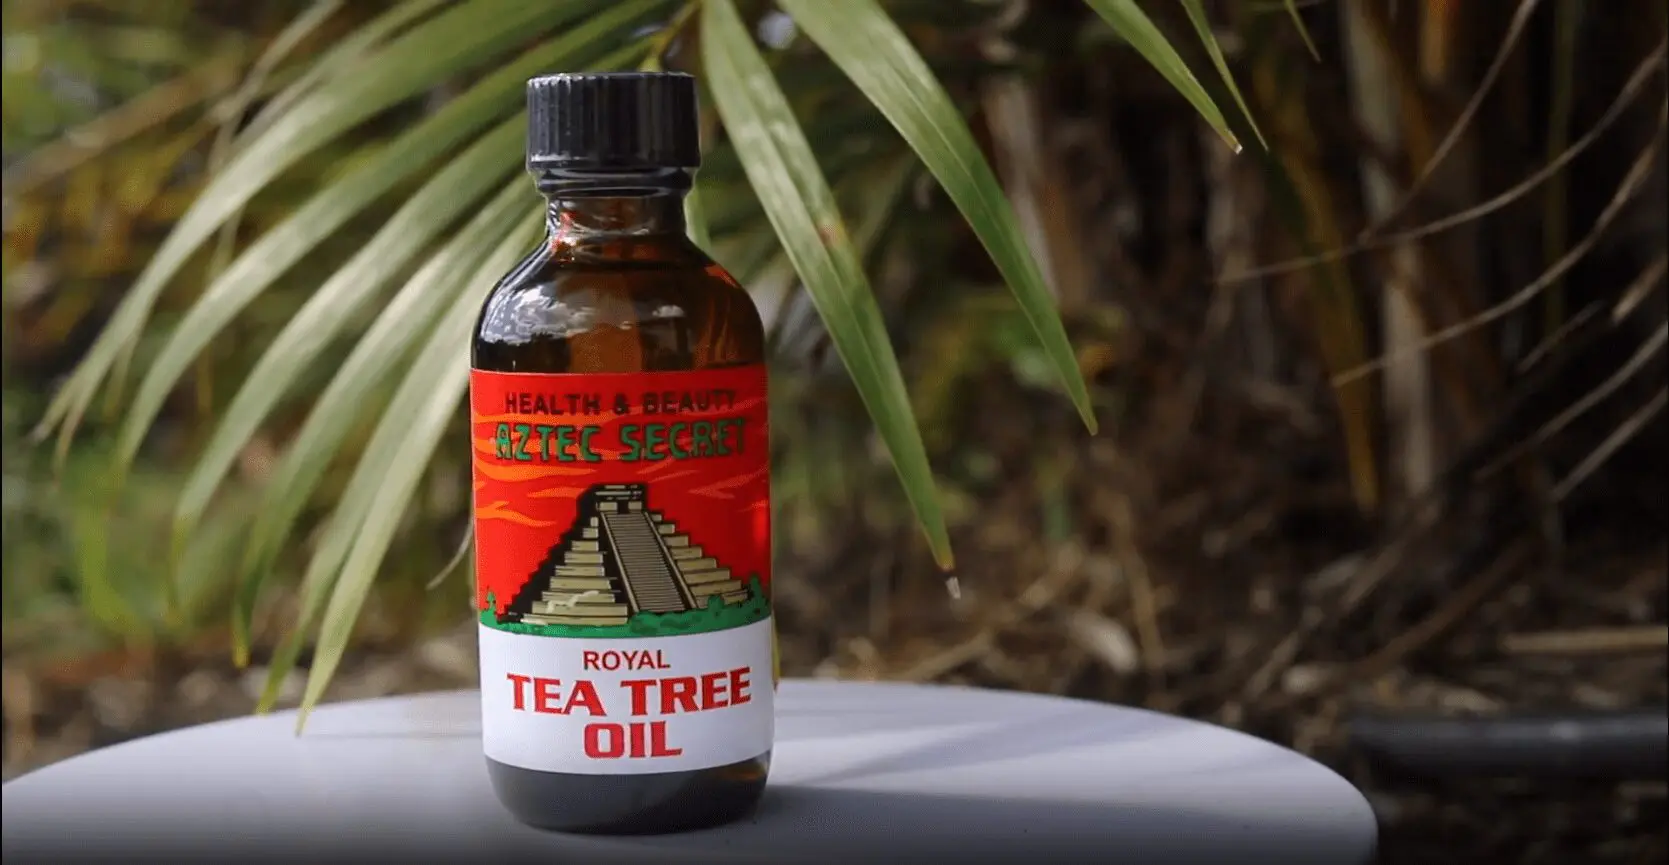 Royal Tea tree Oil